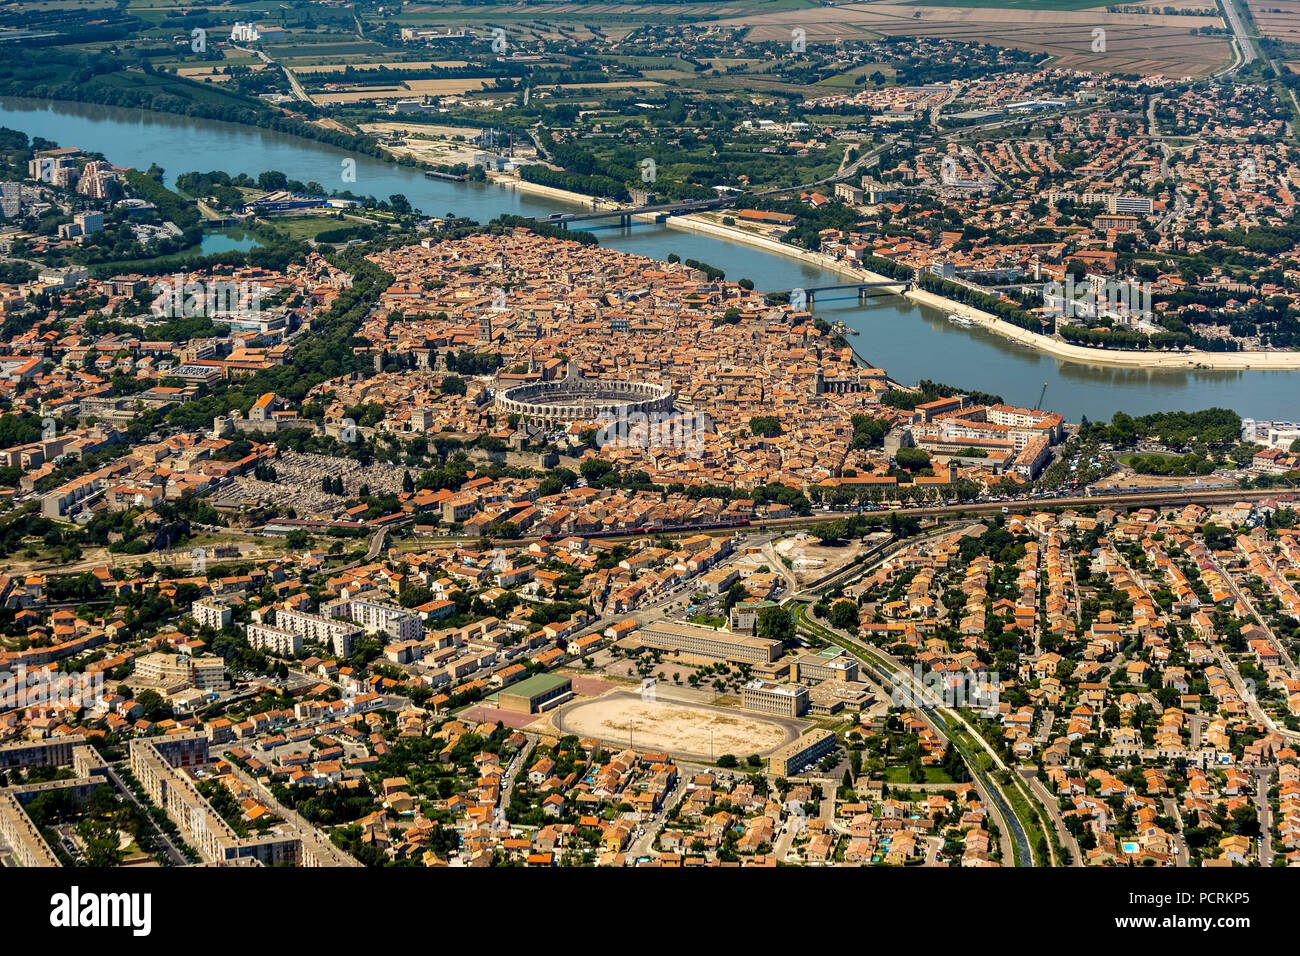 Historische Altstadt von Arles auf der Rhone, Zentrum von Arles mit Amphitheater, UNESCO-Kulturdenkmal, Arles, Bouches-du-Rhône der Region Provence-Alpes-Côte d'Azur, Frankreich Stockfoto